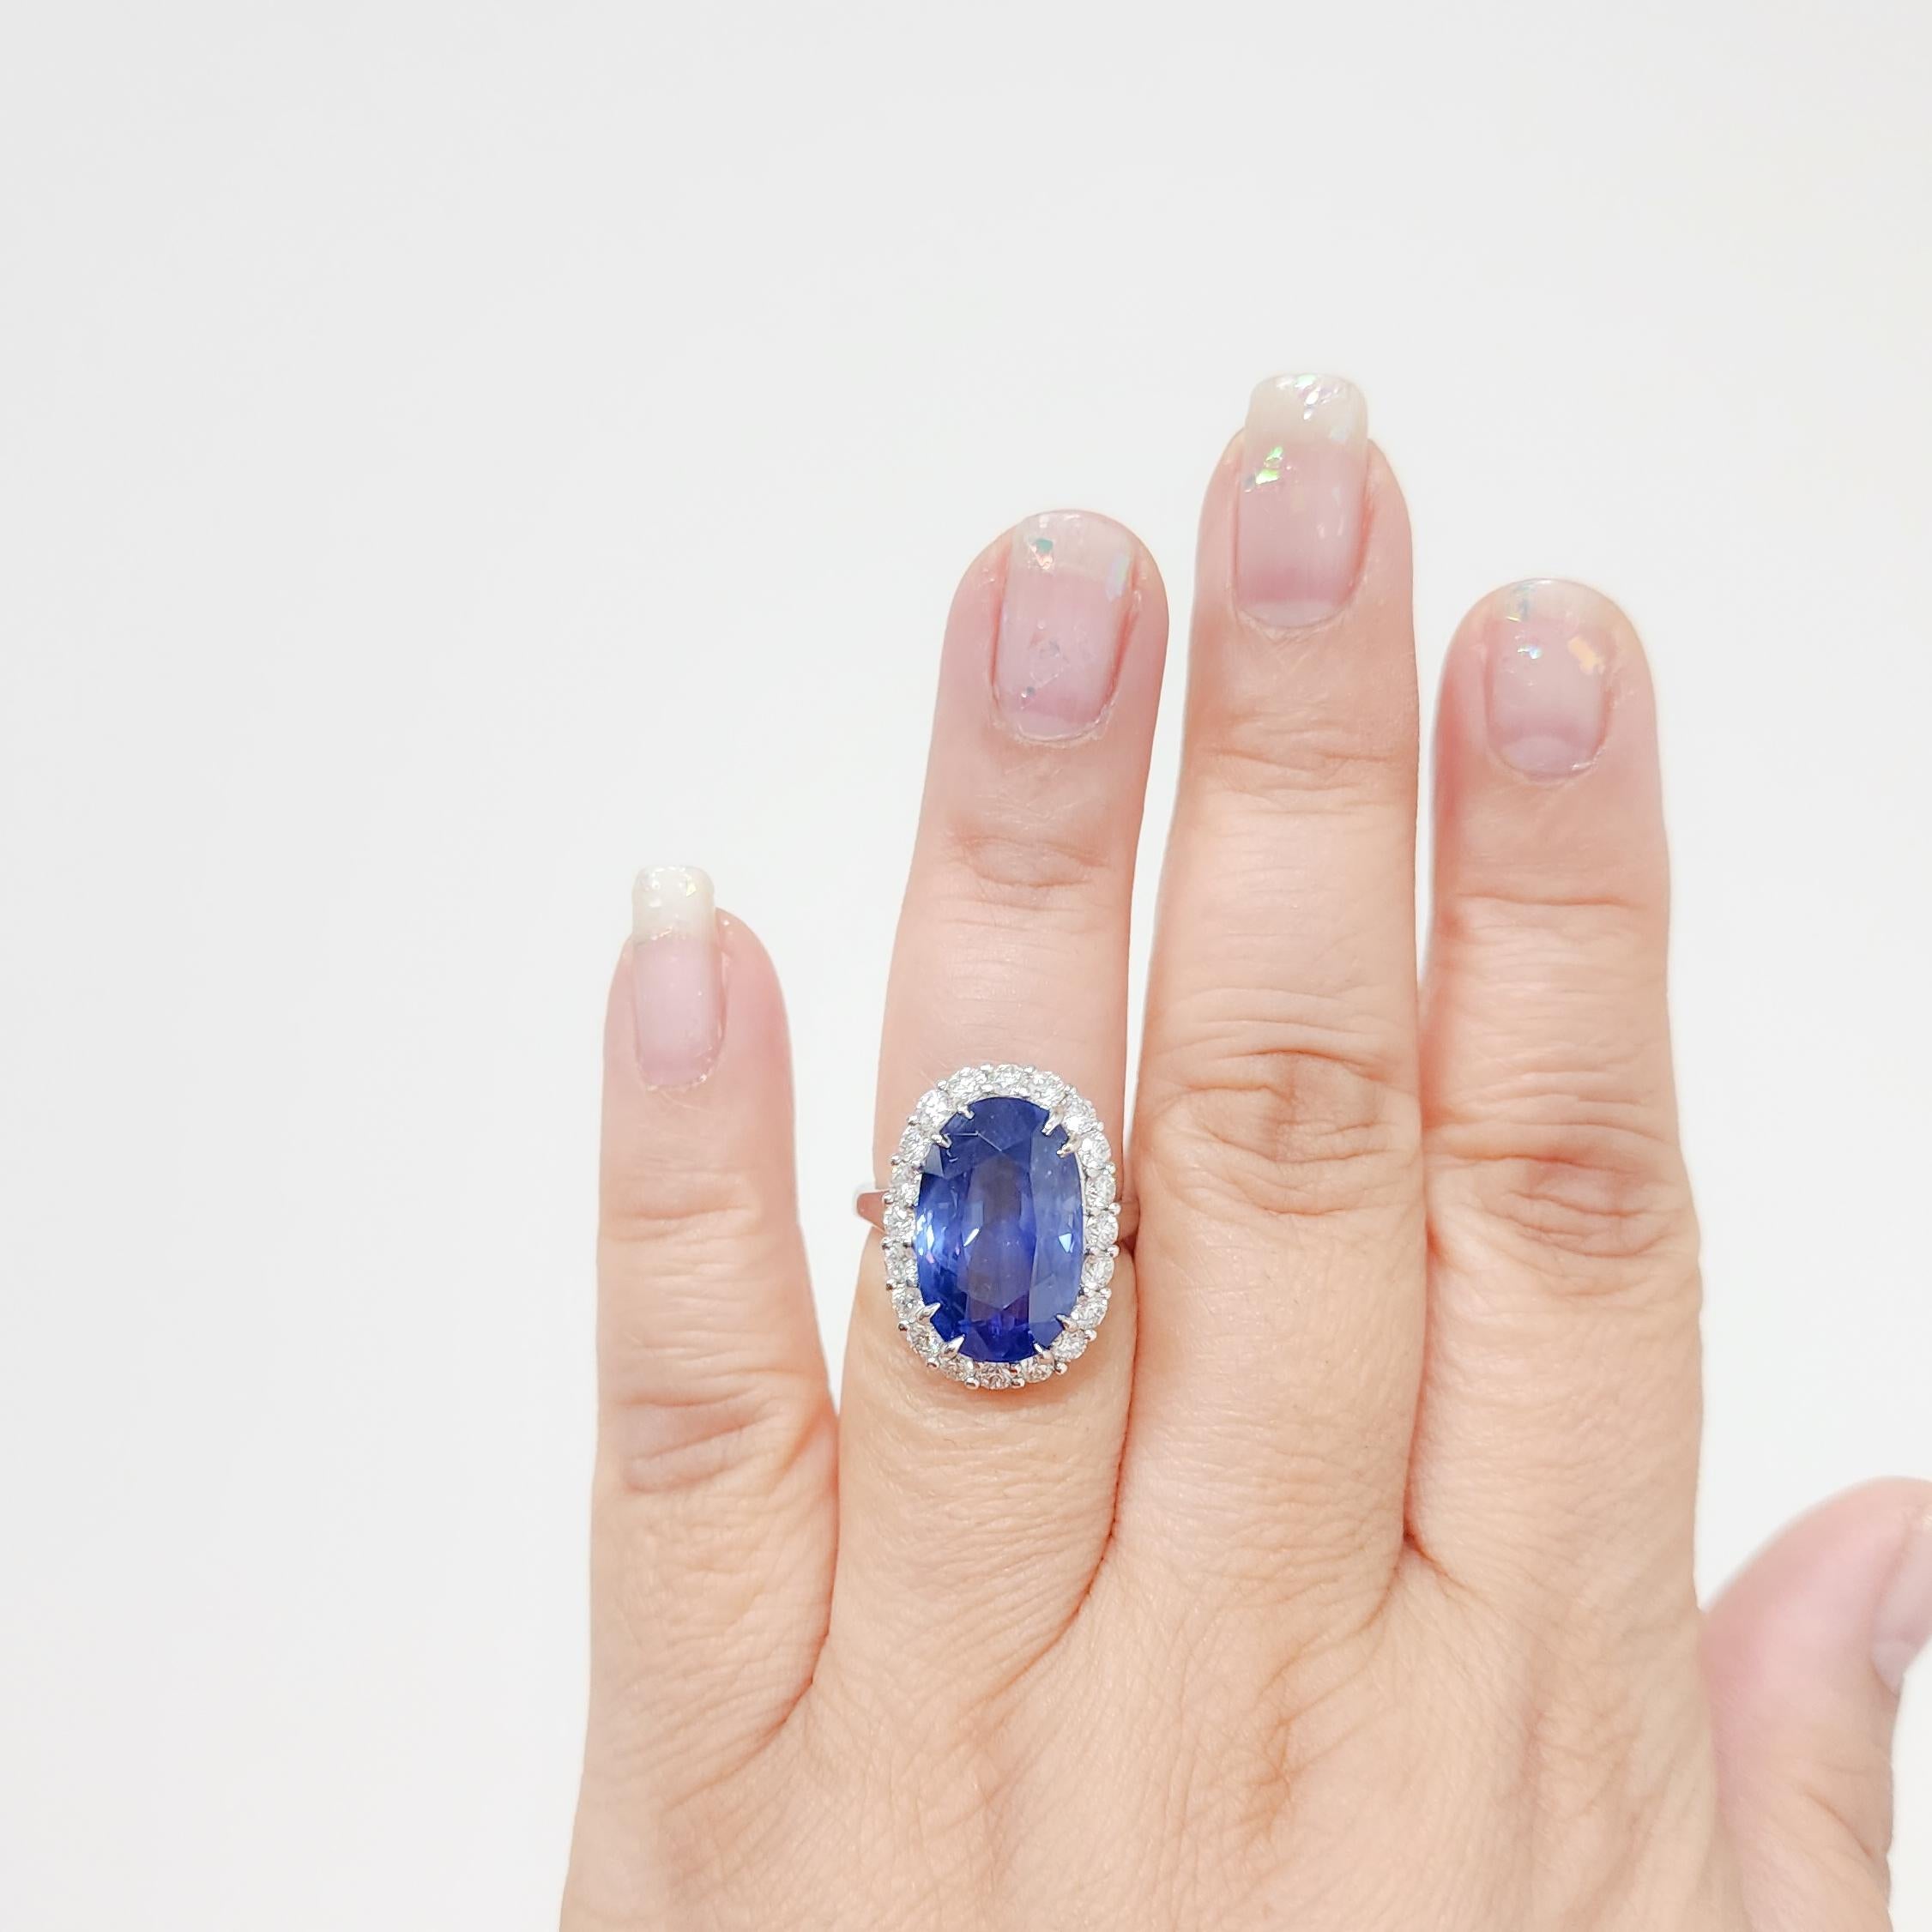 Magnifique saphir bleu brillant ovale de 16,47 ct. de bonne qualité provenant du Sri Lanka avec des diamants blancs ronds de 1,34 ct. de bonne qualité.  Fait à la main en platine.  Bague taille 6.5.  Certificat GIA inclus.